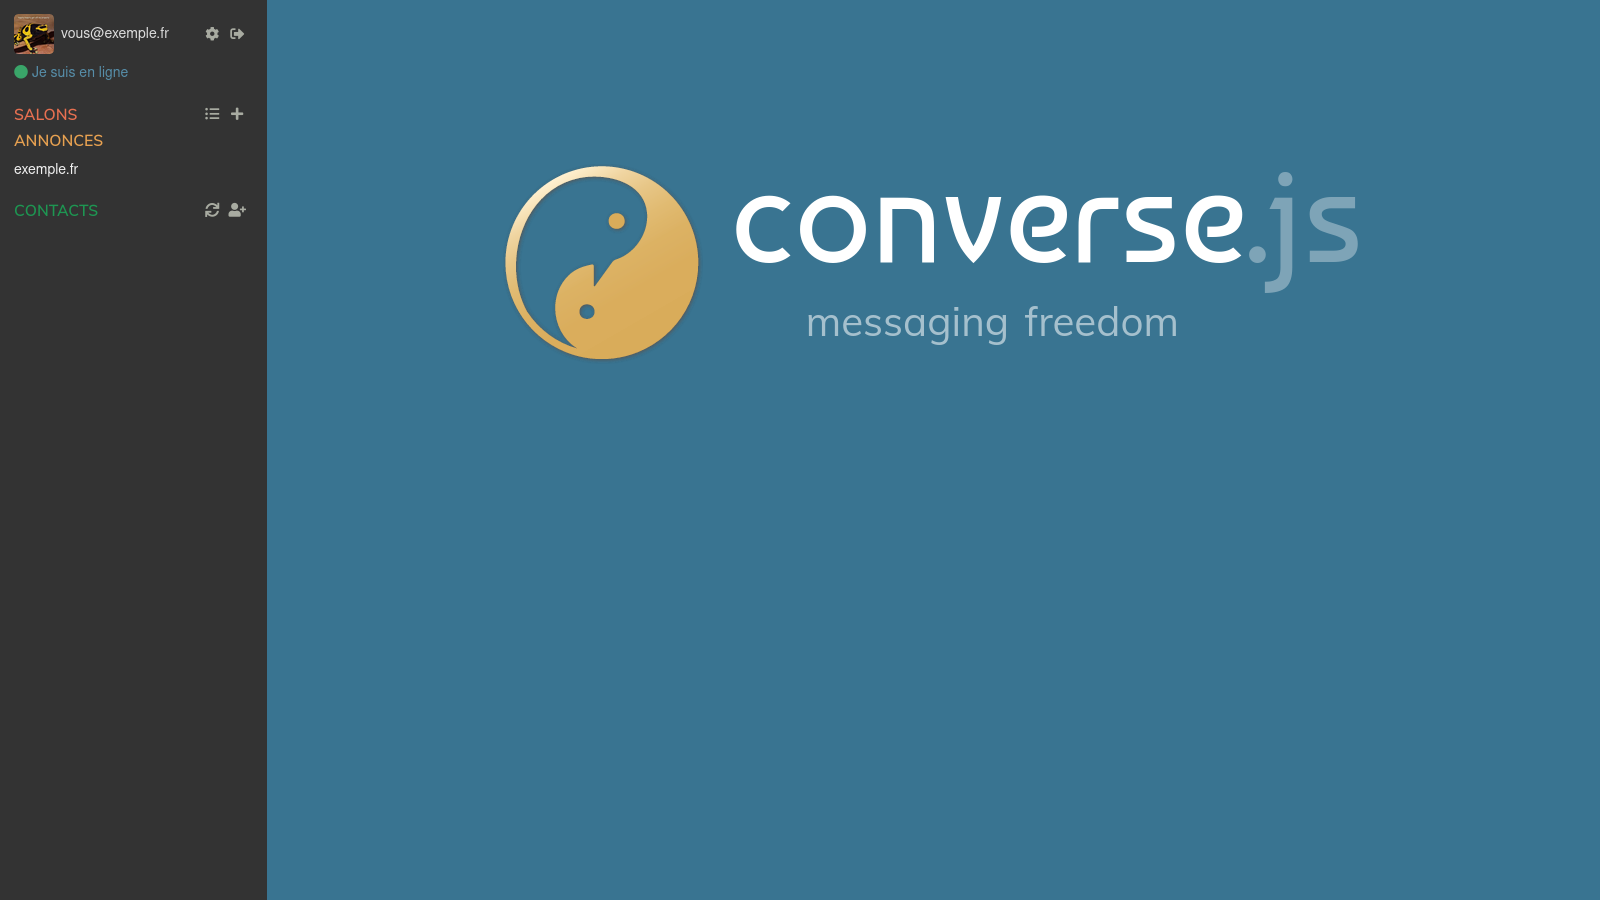 interface principale de Converse.js aprés connexion